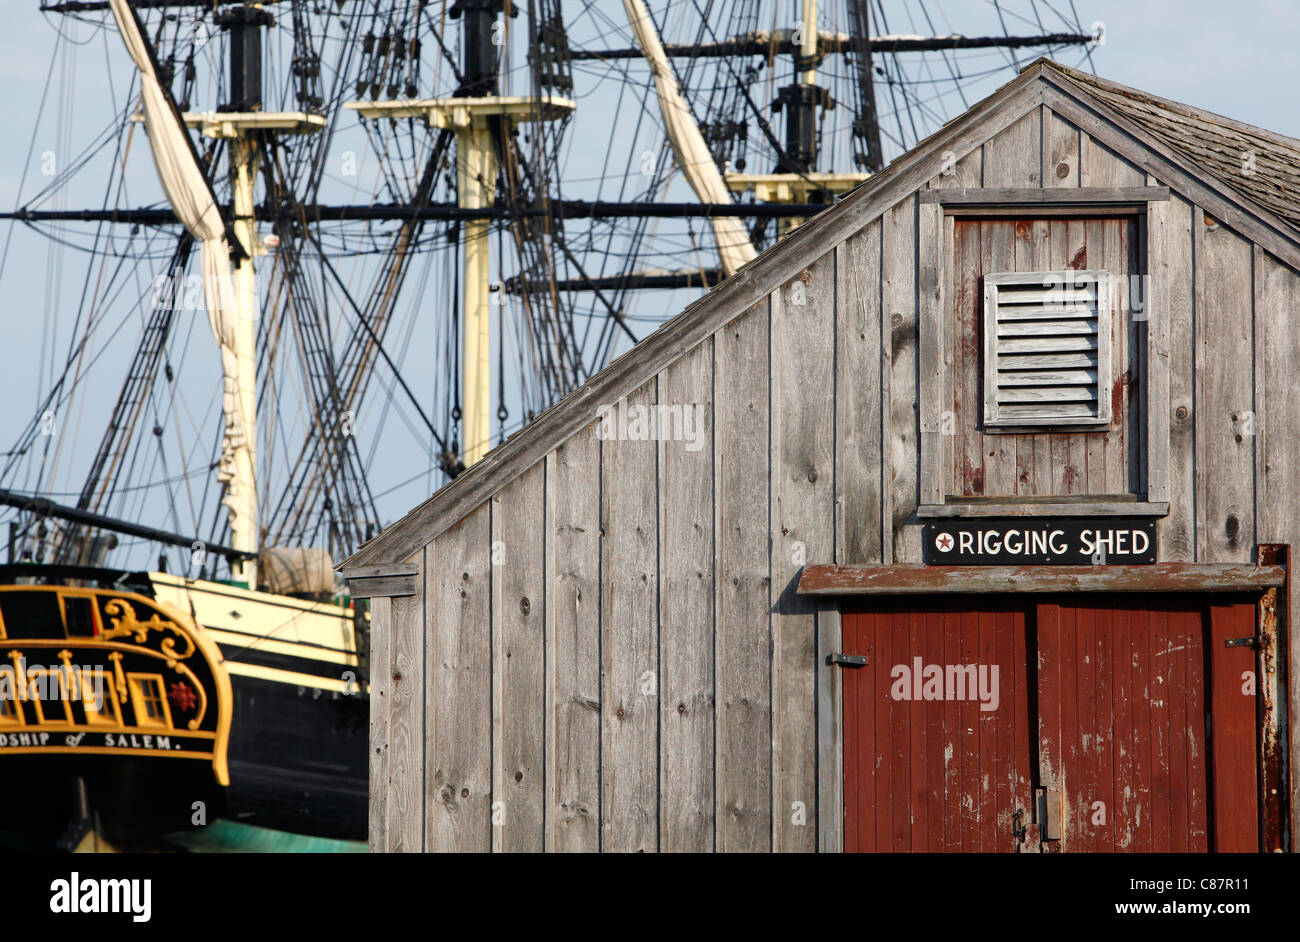 Vue du quai avec l'amitié de Salem tall ship dans le Lieu Historique National Maritime de Salem, Salem, Massachusetts Banque D'Images